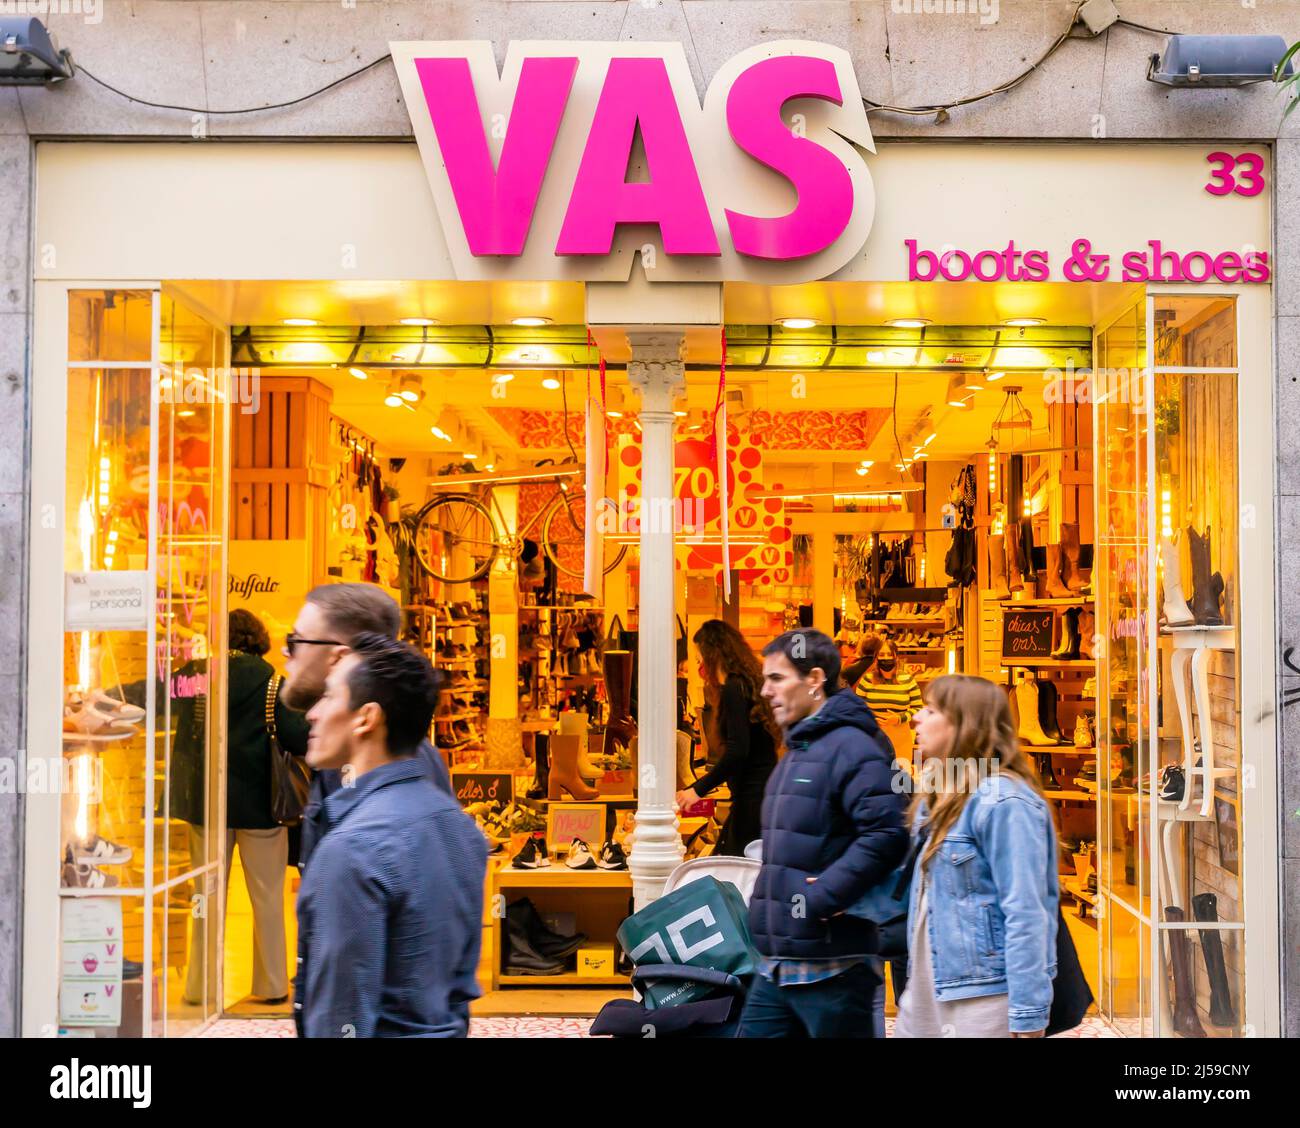 VAS, magasin de chaussures à Malasana, Madrid, Espagne Banque D'Images